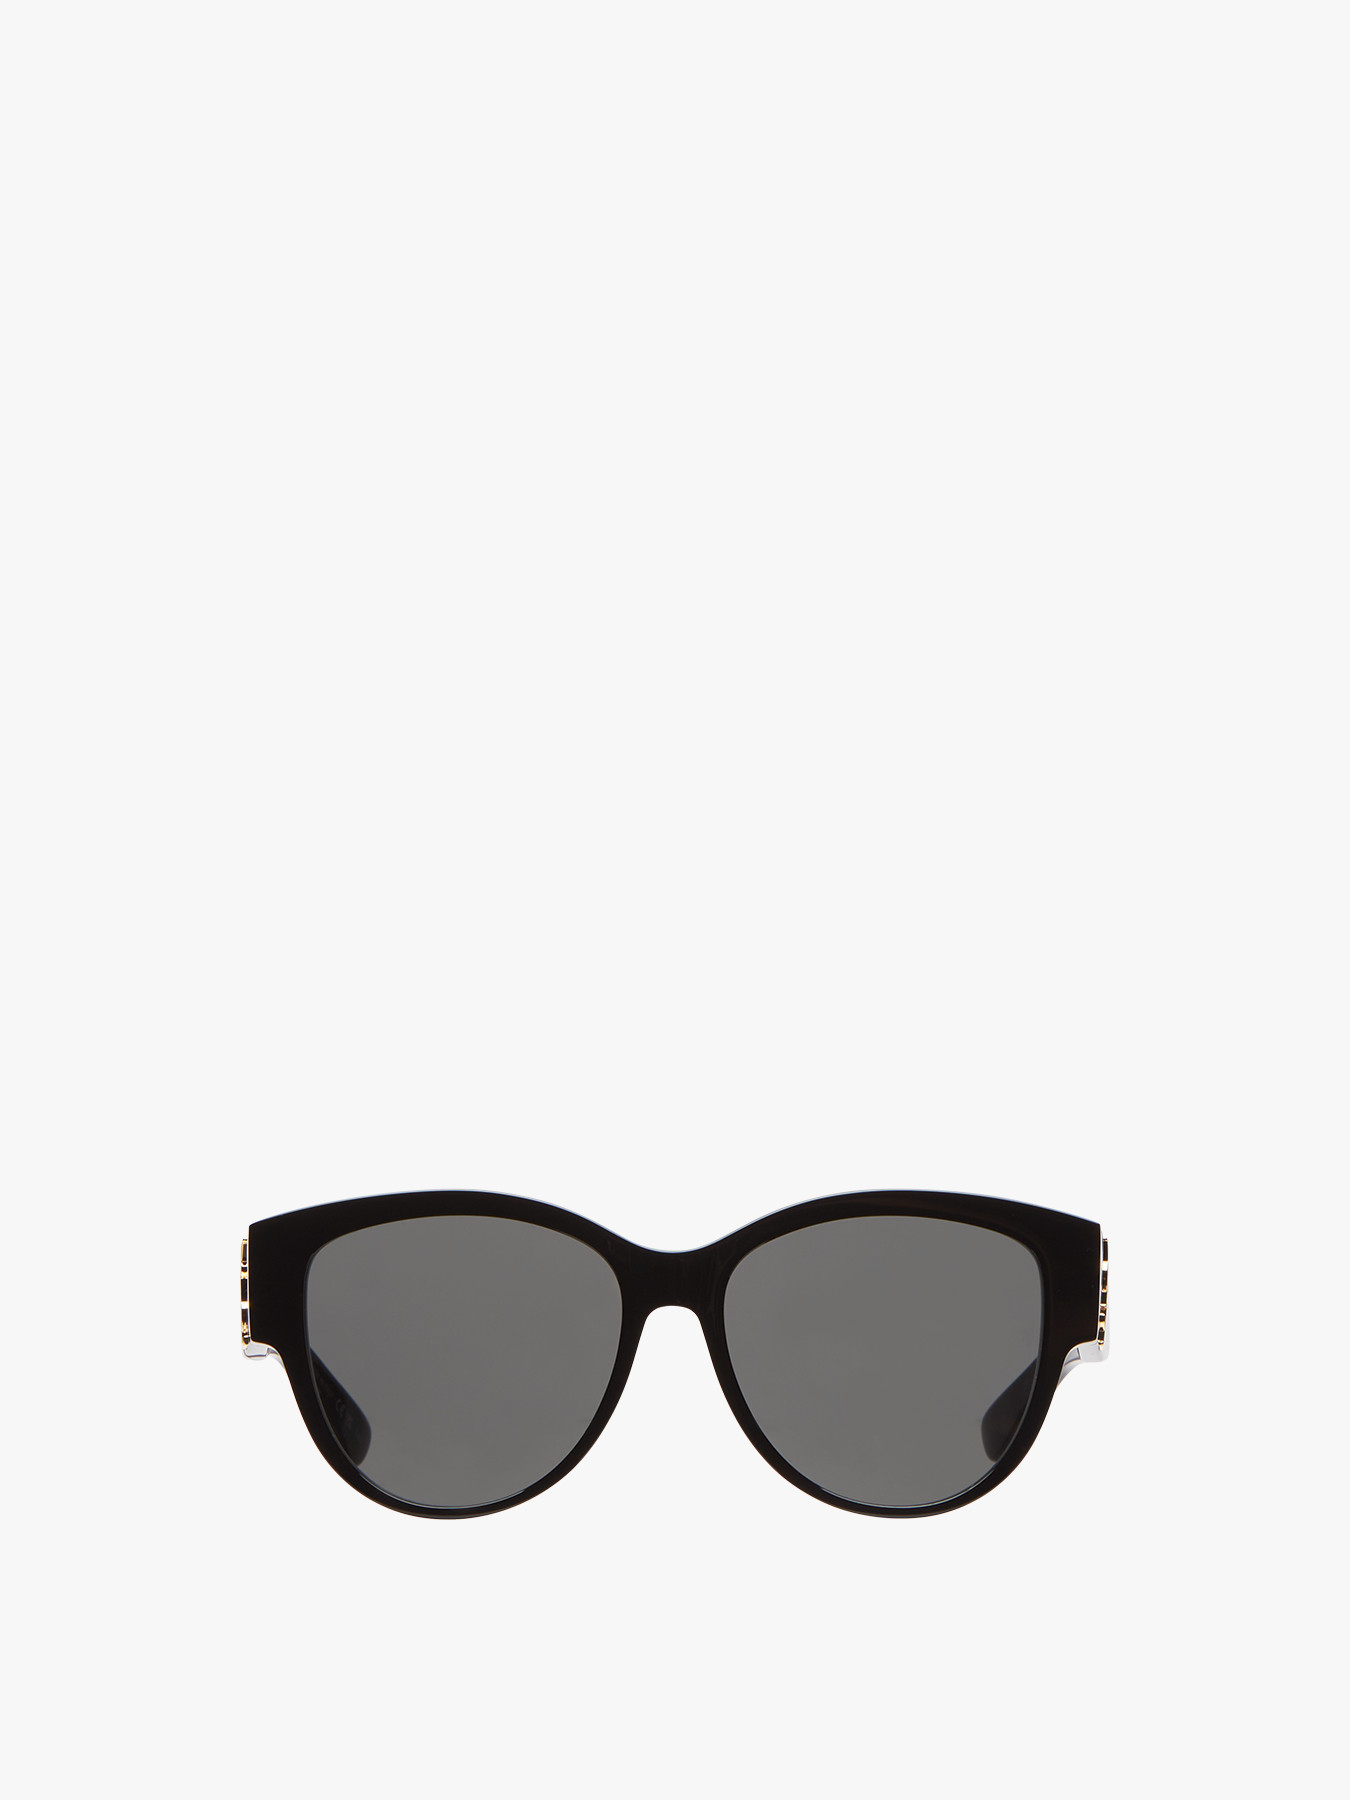 Saint Laurent Women's Butterfly Acetate Sunglasses Black